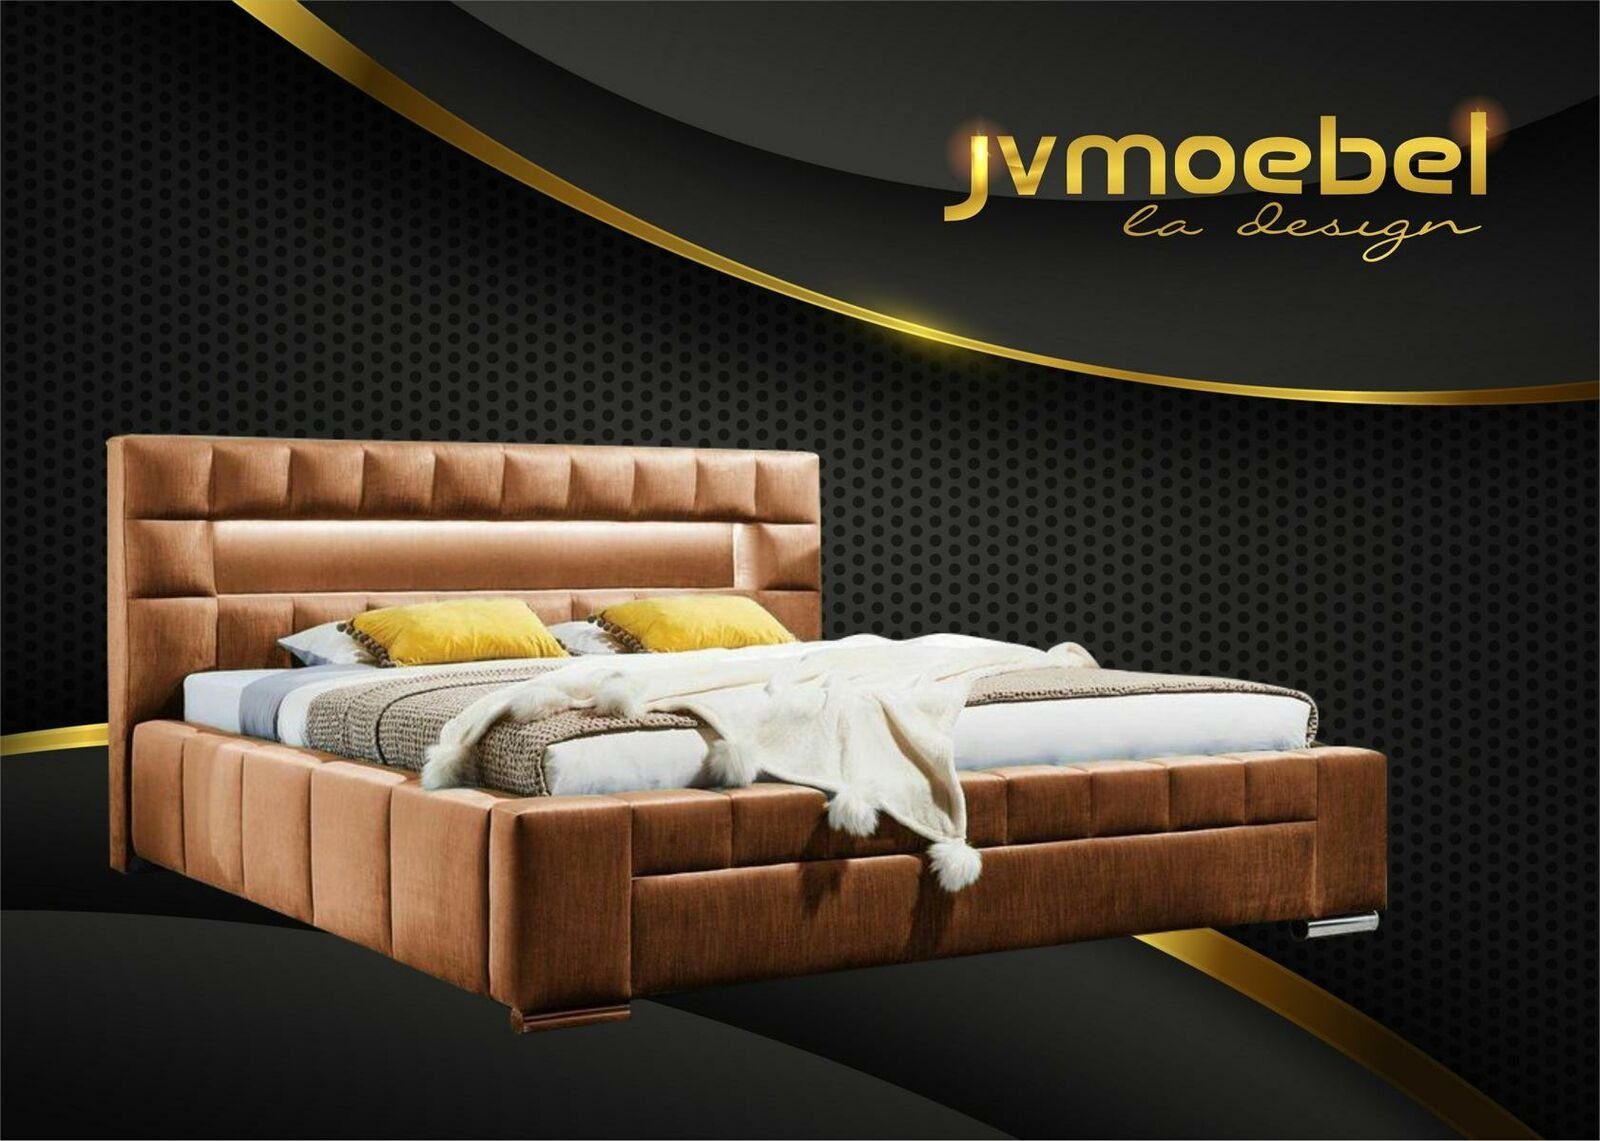 JVmoebel Bett, Bett inkl LED Beleuchtung Schlafzimmer Design Möbel Modern Betten Braun